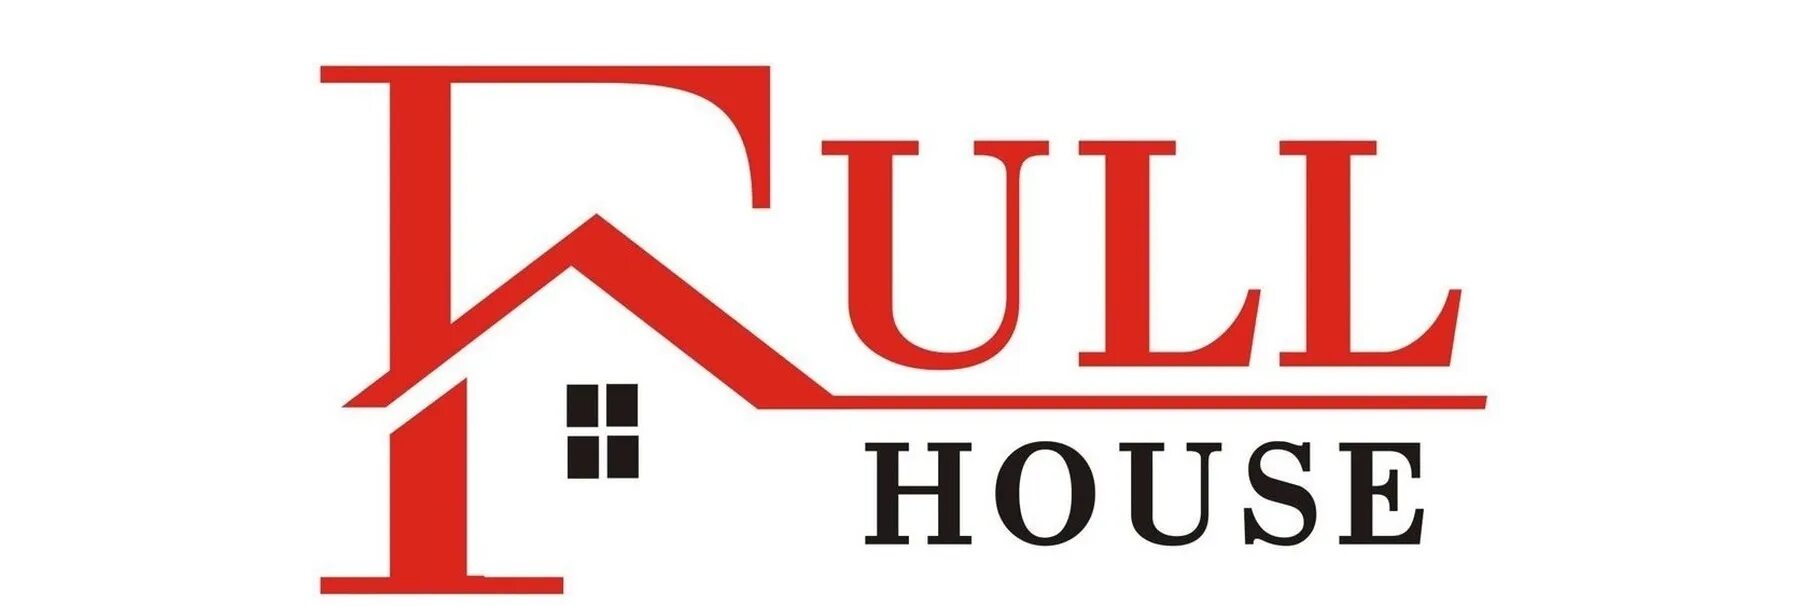 Магазин фулл. Логотип Full House. Строительная фирма теплый дом Рыбинск. Фулл Хаус магазин. Лапин Хаус лого PNG.